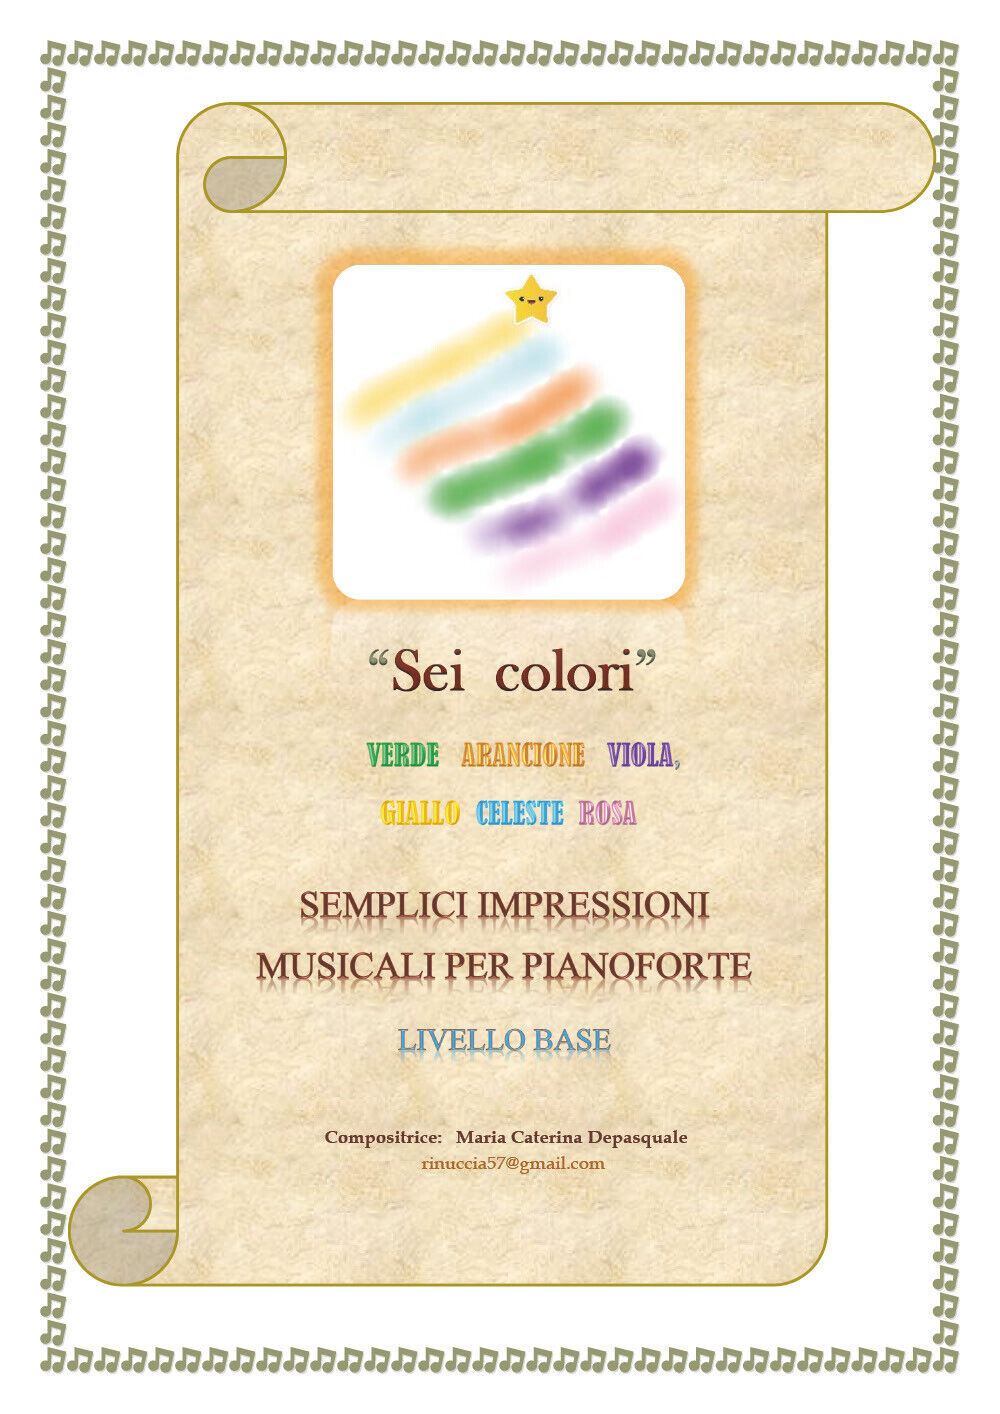 Sei colori (semplici impressioni musicali per pianoforte - livello base) di Mari